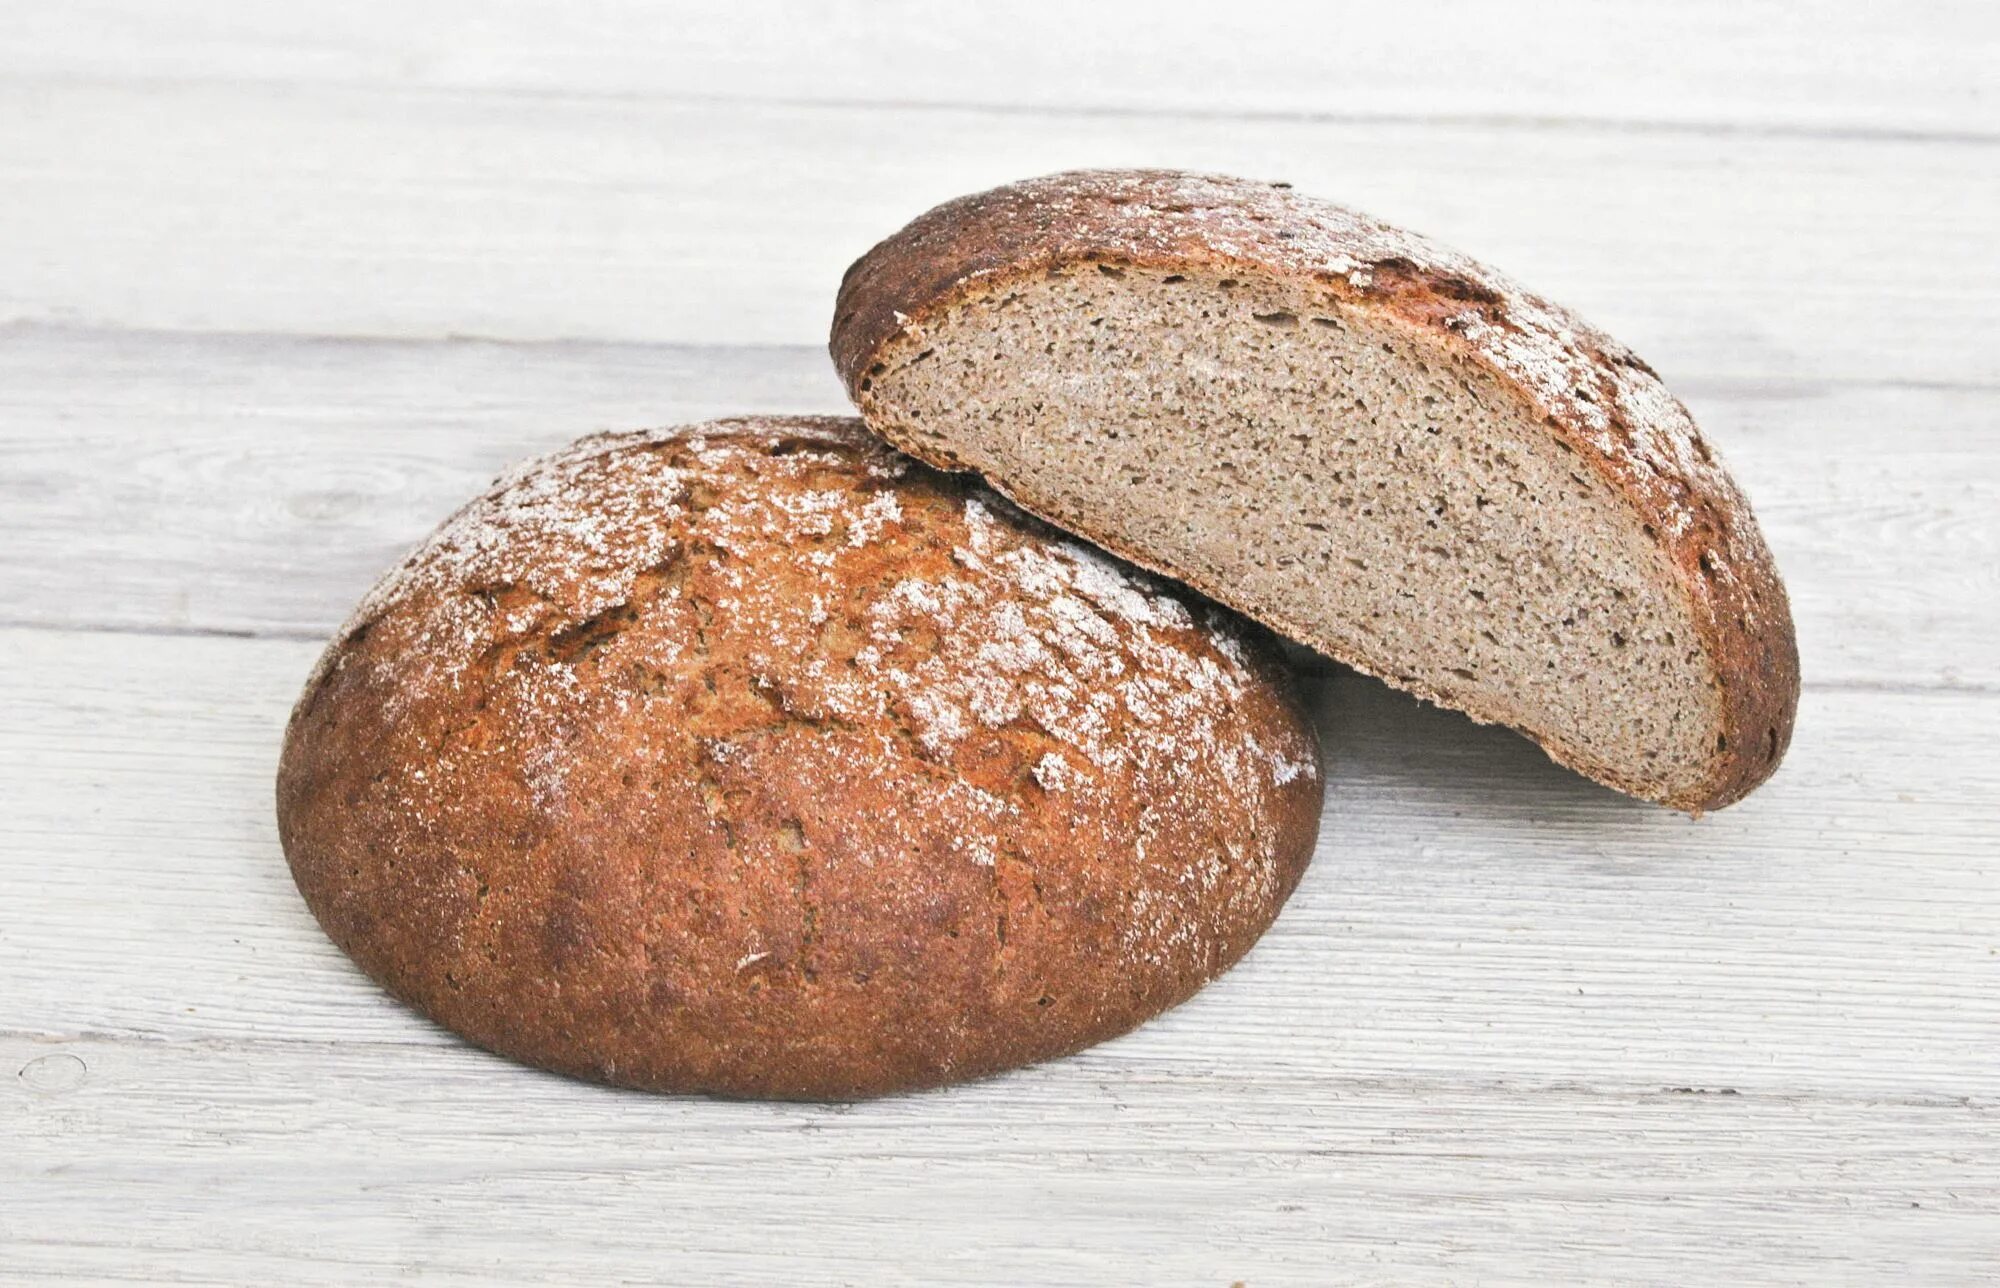 Хлеб ржанопшеничный поддовый. Хлеб ржано-пшеничный подовый. Хлеб пшеничный деревенский подовый. Хлеб пшеничный отрубной. Вес ржаного хлеба